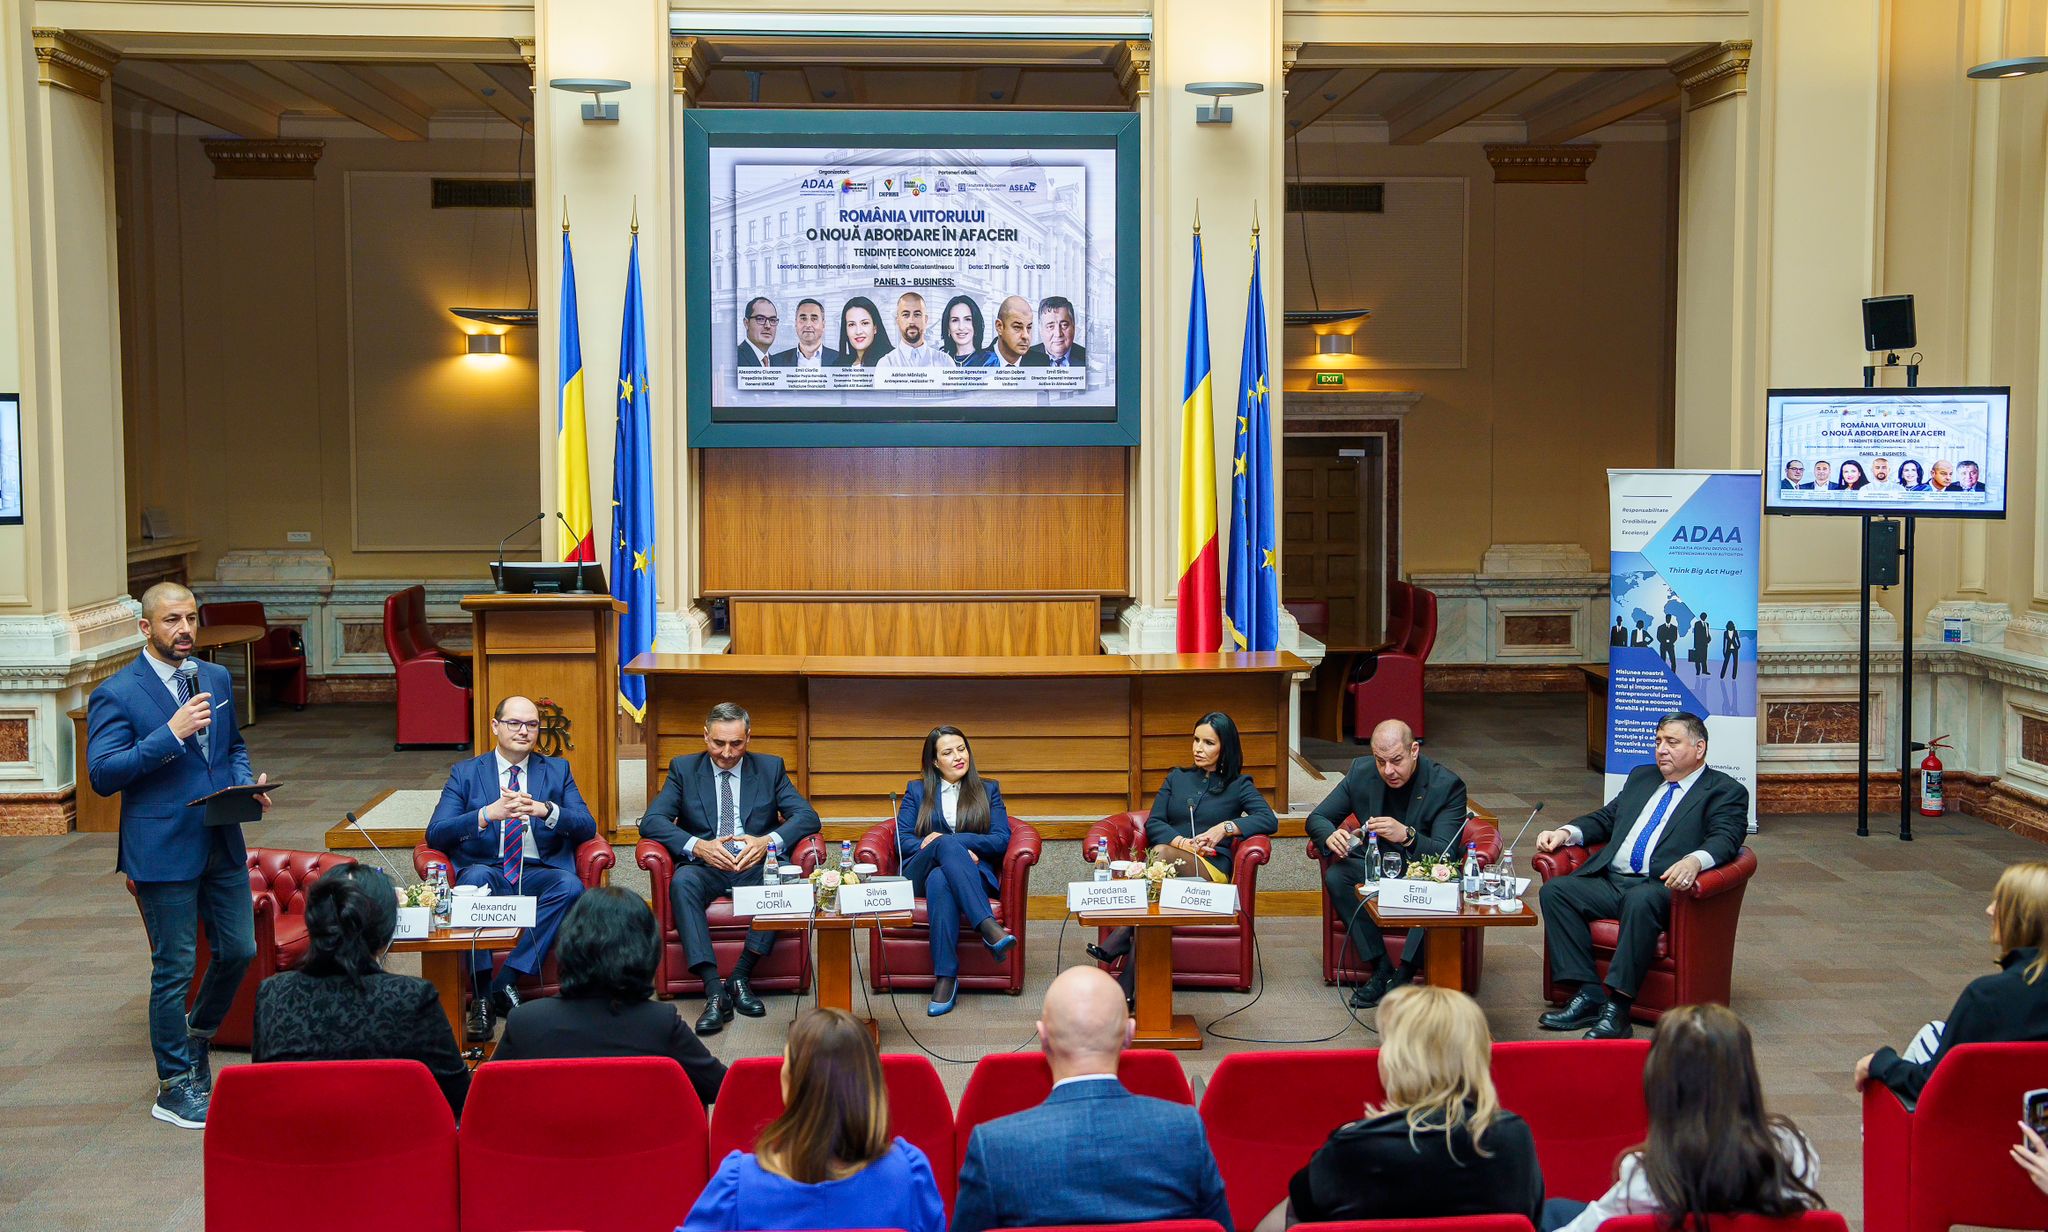 România viitorului: O nouă abordare în afaceri